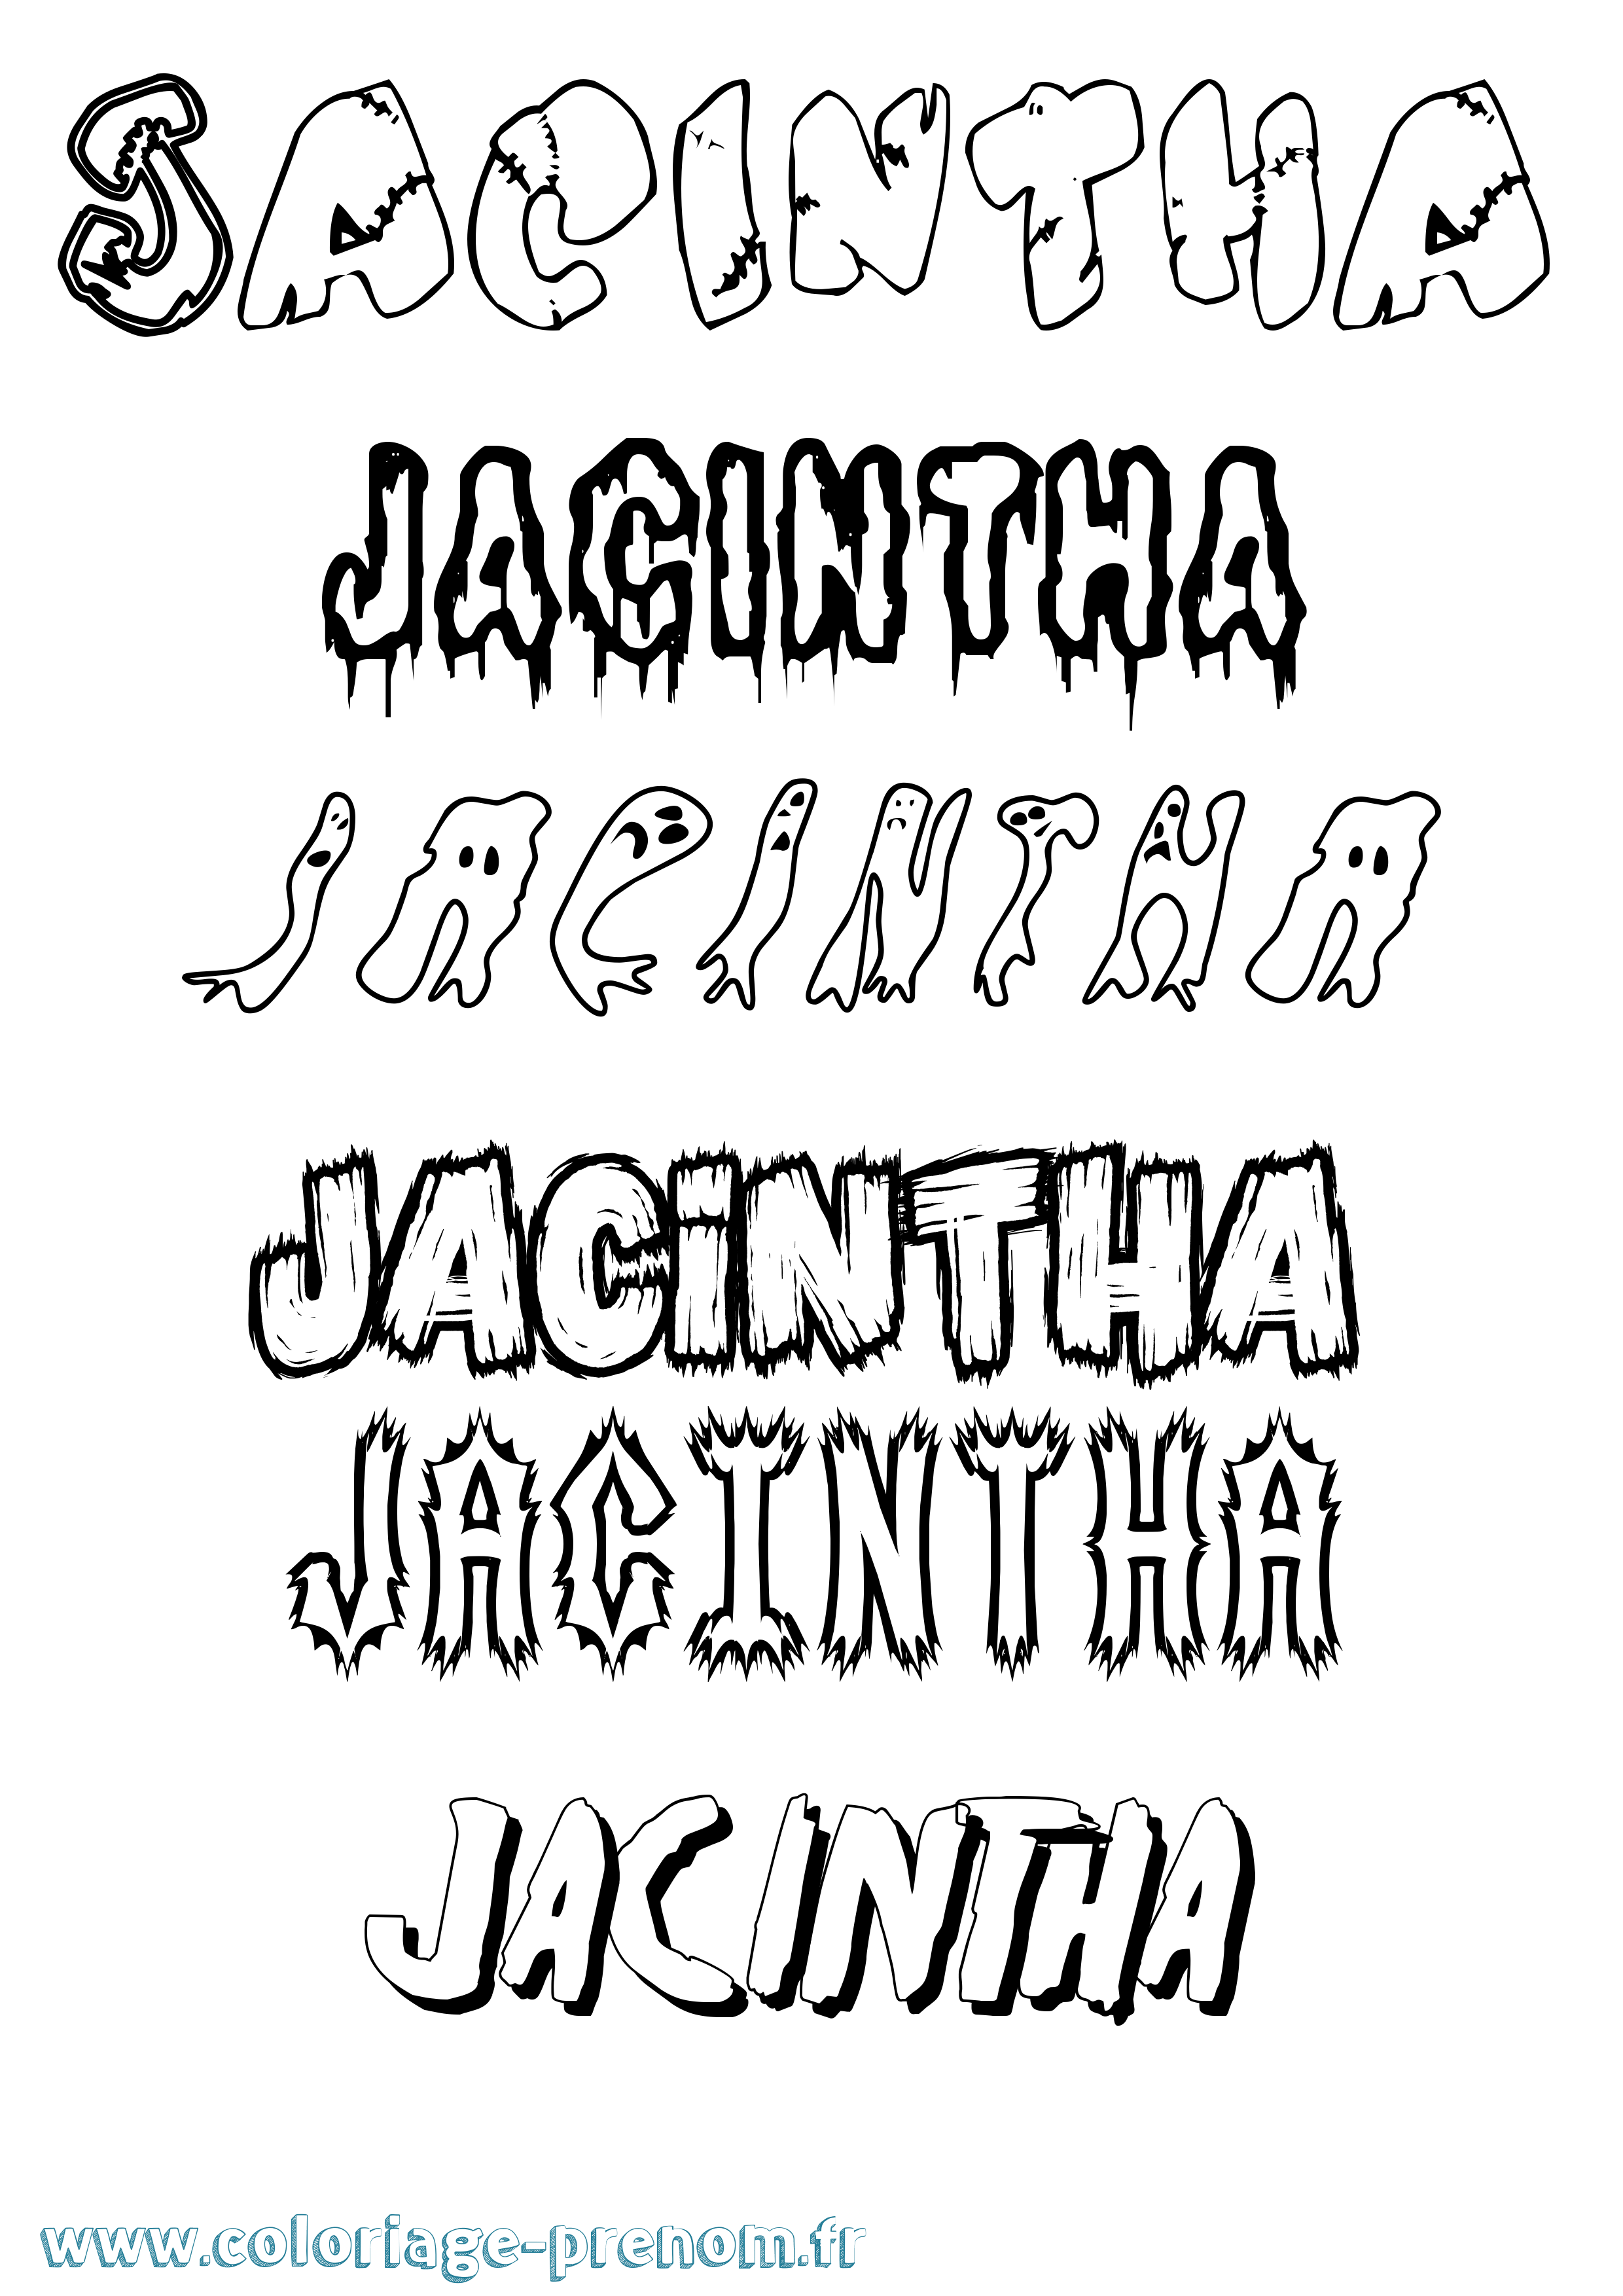 Coloriage prénom Jacintha Frisson